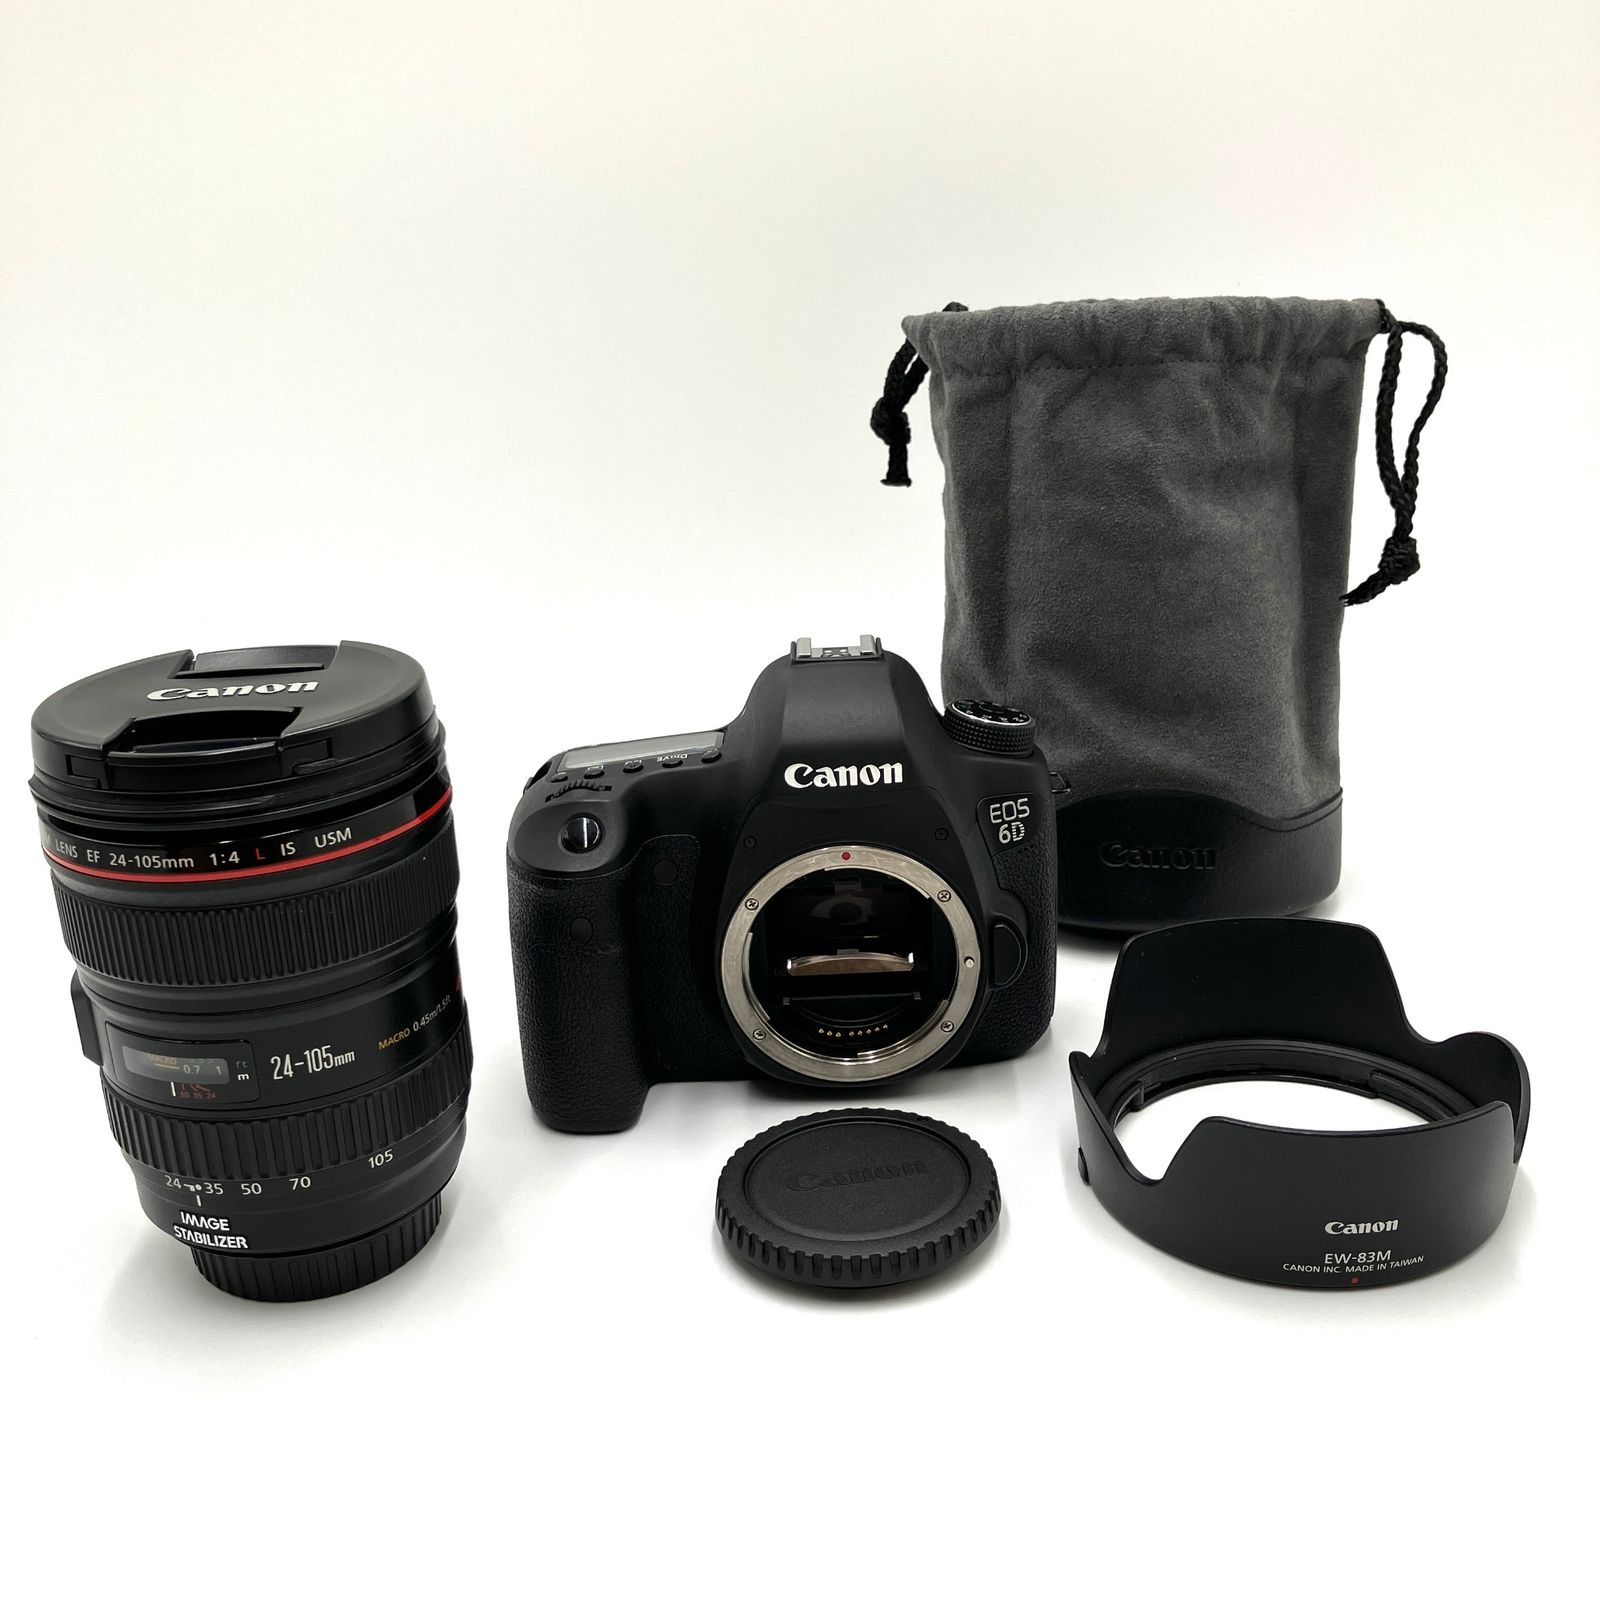 Canon デジタル一眼レフカメラ EOS 6D レンズキット EF24-105mm F4L IS ...